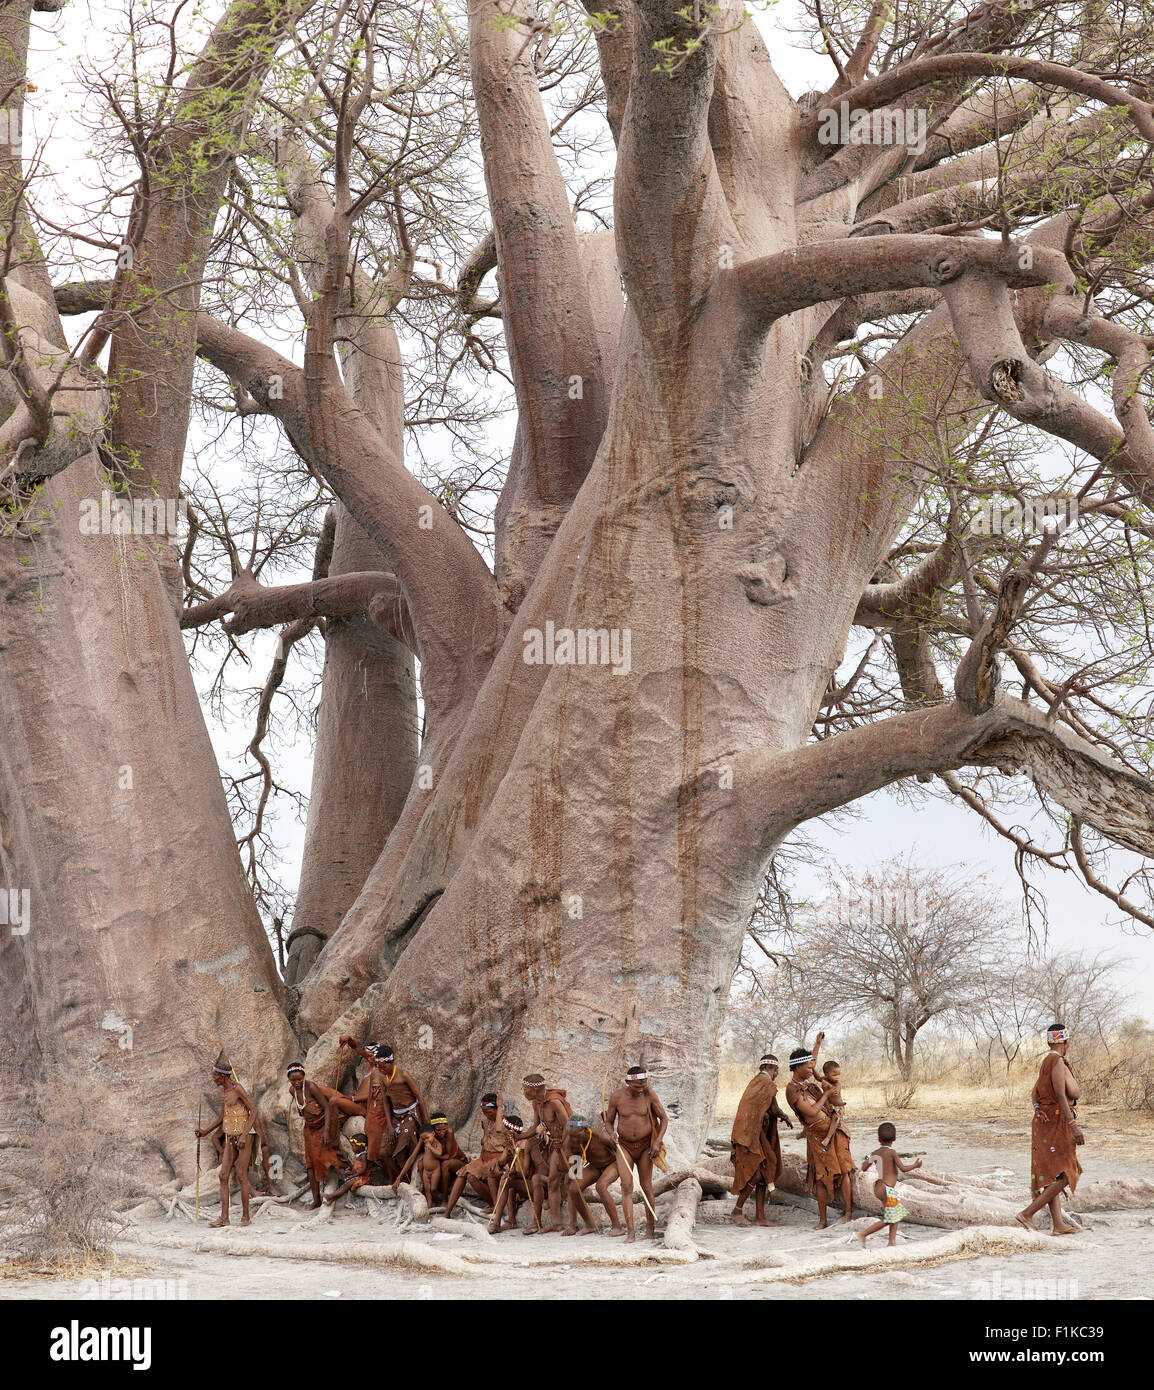 Grupo de bosquimanos bajo un árbol Foto de stock